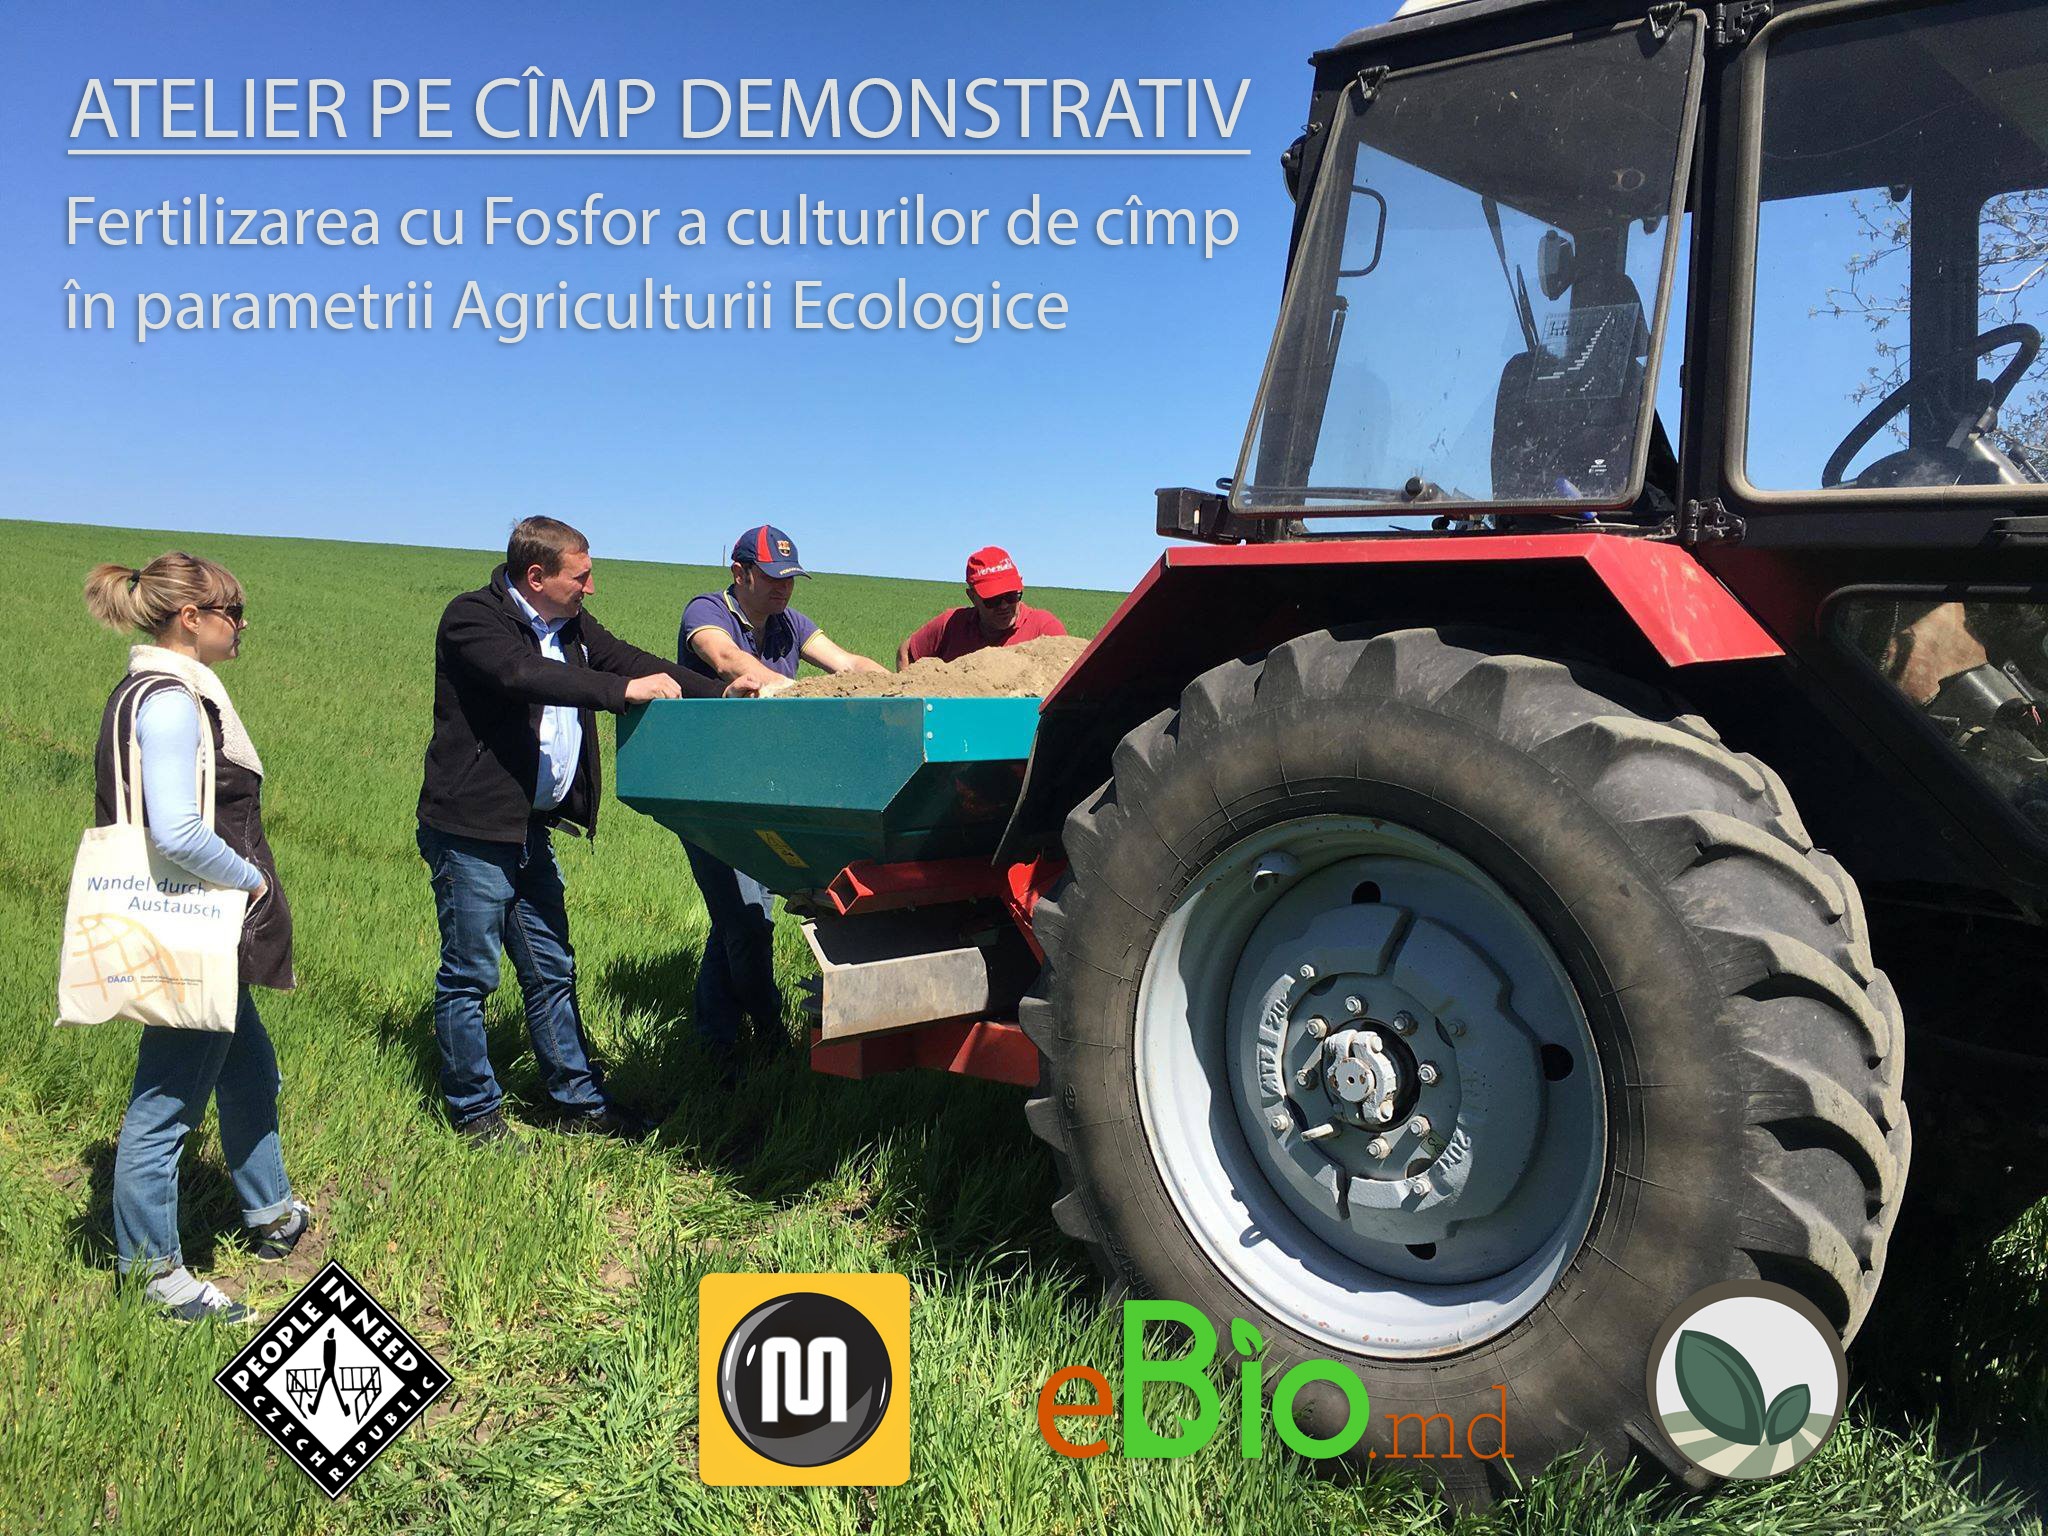 Atelier de lucru: Fertilizarea cu Fosfor a culturilor de cîmp în parametrii Agriculturii Ecologice